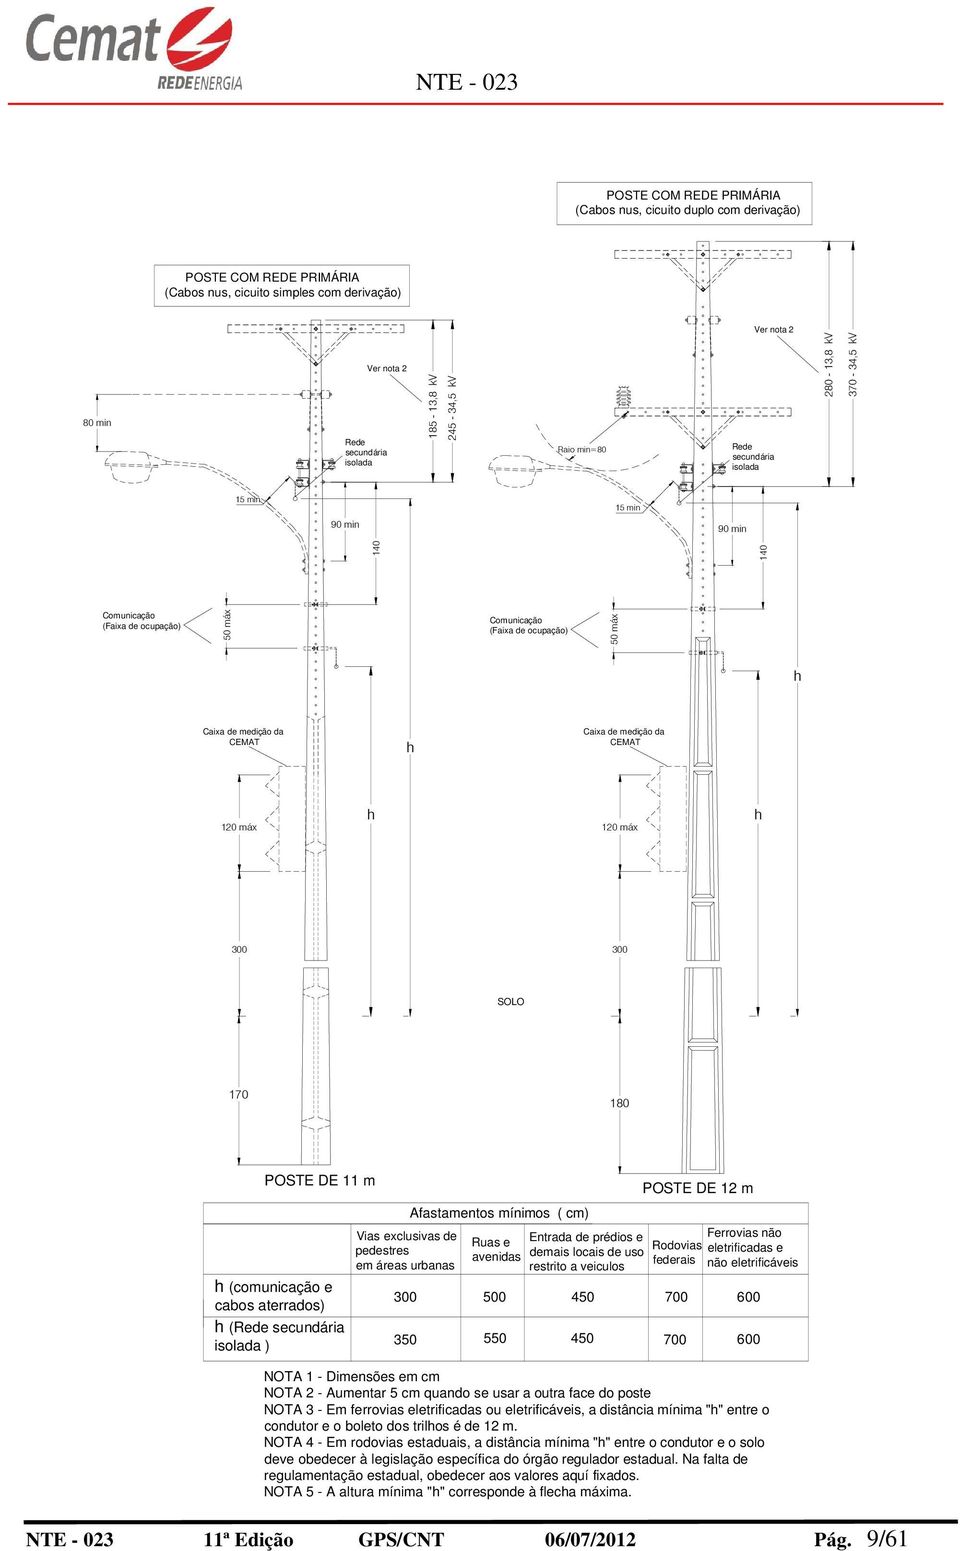 medição da CEMAT Caixa de medição da CEMAT 120 máx 120 máx SOLO 170 180 POSTE DE 11 m (comunicação e cabos aterrados) (Rede secundária isolada ) Vias exclusivas de pedestres em áreas urbanas